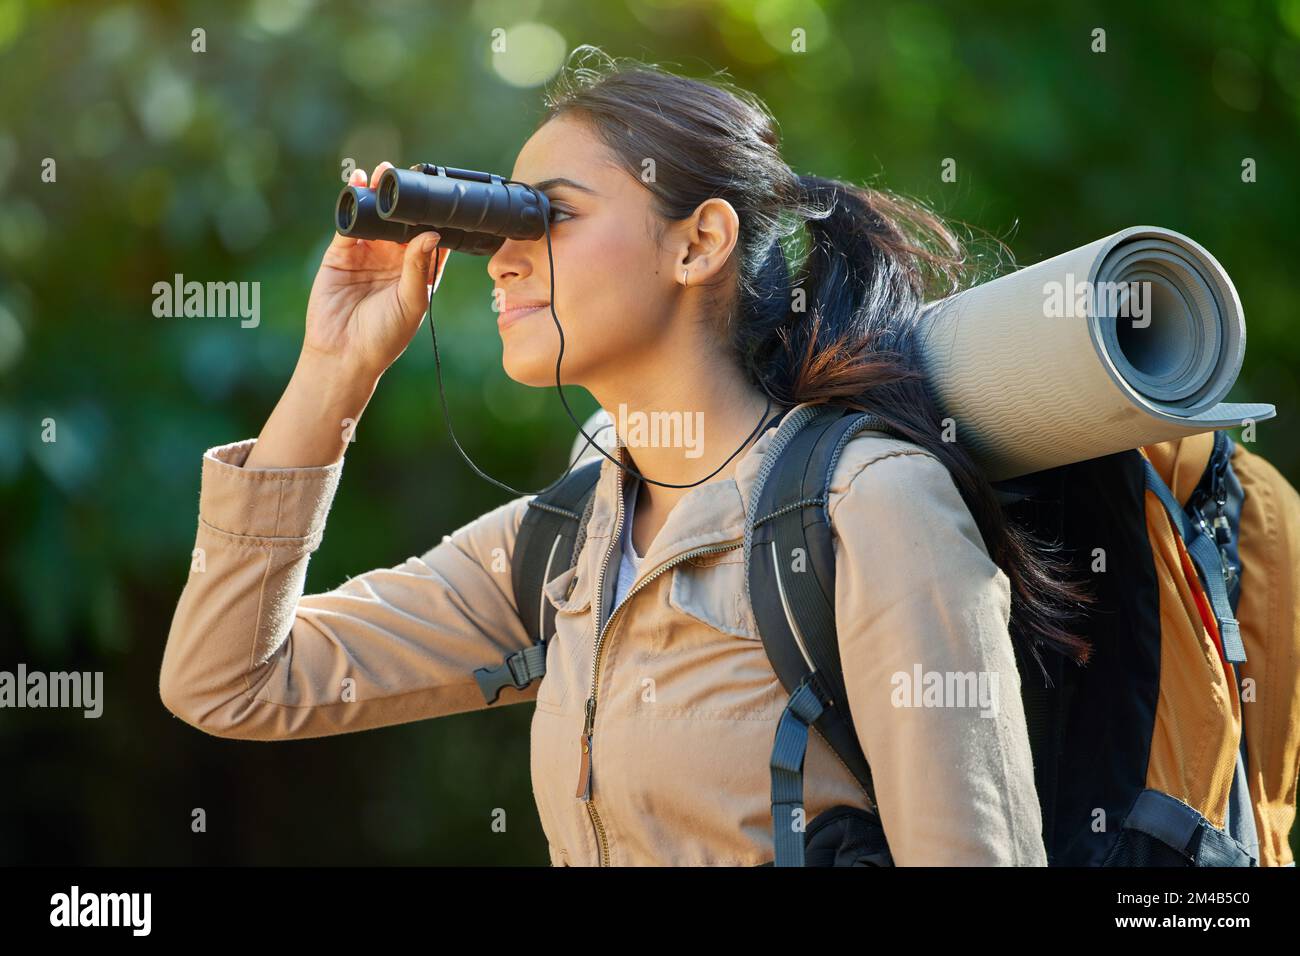 Wandern, Fernglas und Sehvermögen im Wald mit Rucksack, Campingausrüstung und Lächeln auf der Naturreise. Glückliches Wanderer-Mädchen, Vogelbeobachtung und Trekking Stockfoto